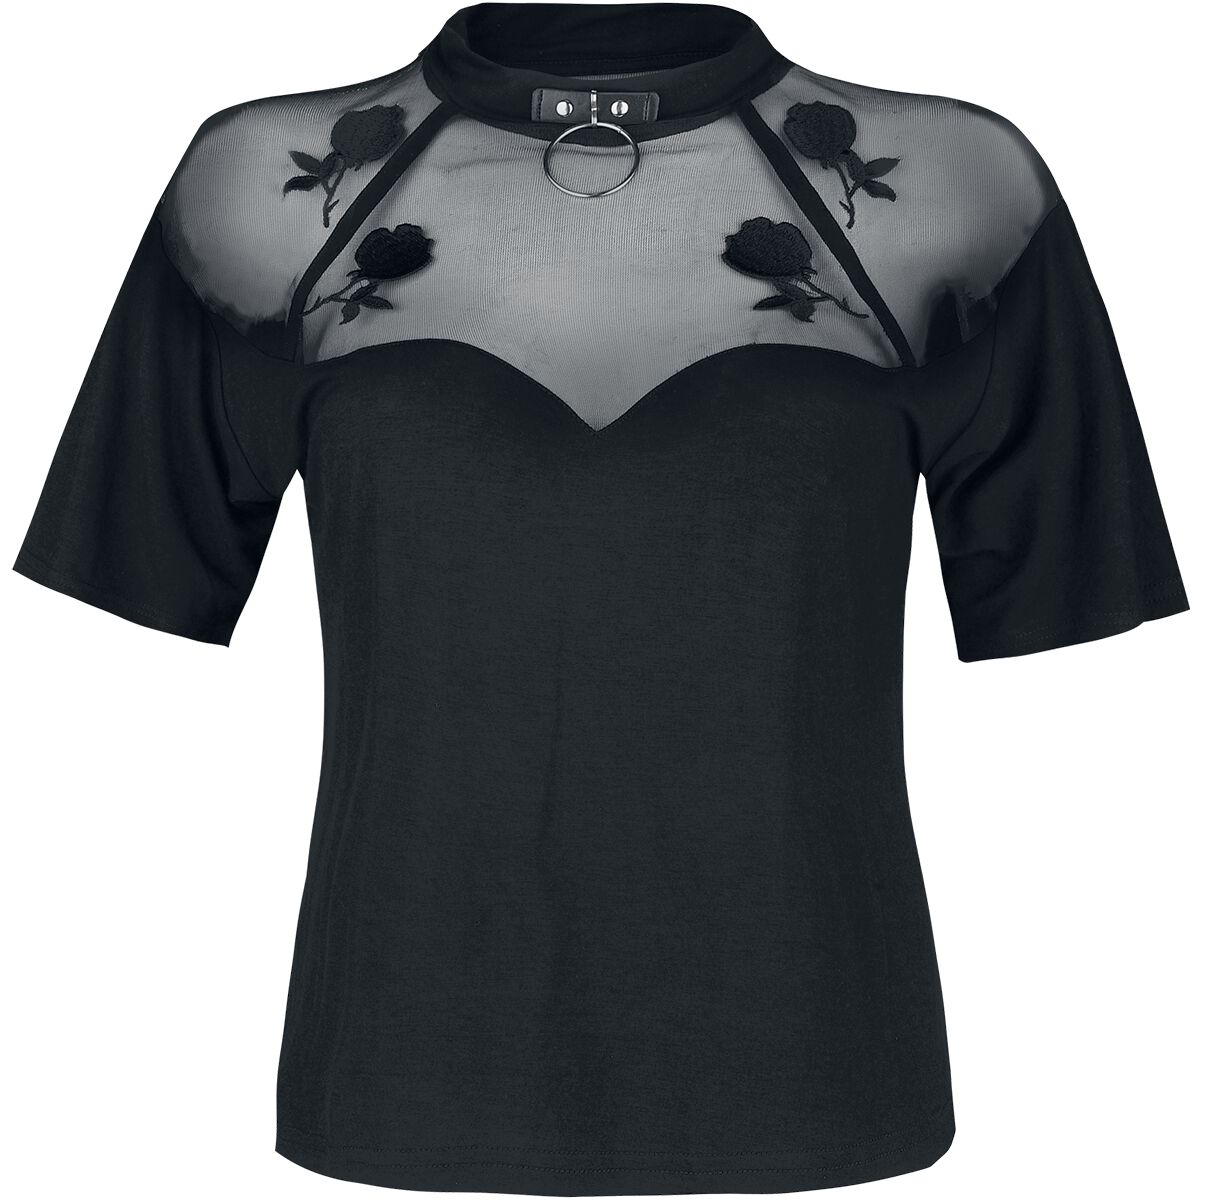 T-Shirt Manches courtes Gothic de Jawbreaker - Haut Mesh Rose Garden - S à L - pour Femme - noir